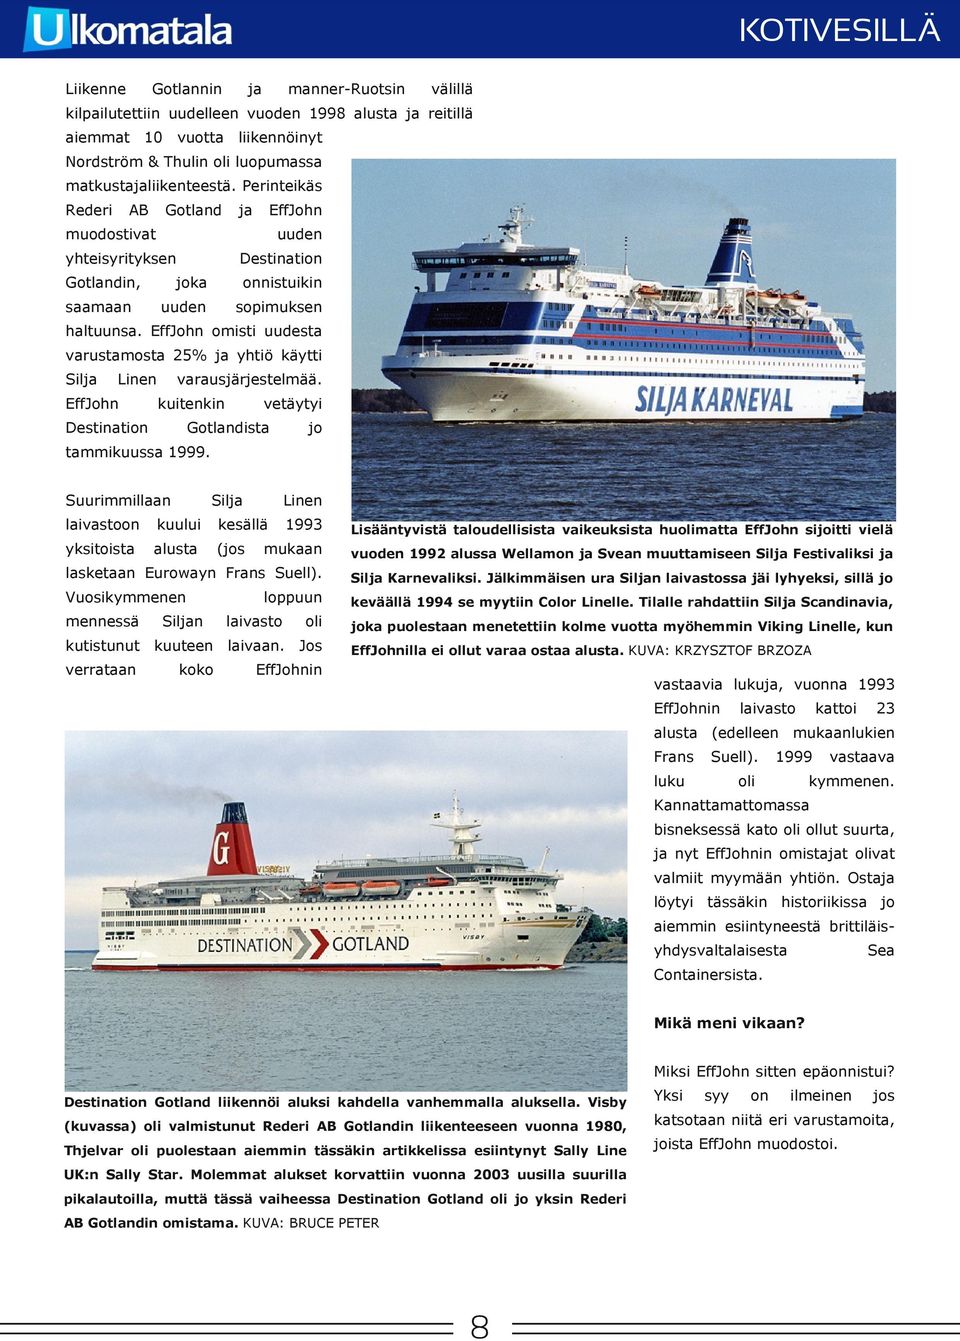 EffJohn omisti uudesta varustamosta 25% yhtiö käytti Sil Linen EffJohn Destinati varausjärjestelmää. kuitenkin vetäytyi Gotlandista tammikuussa 1999.